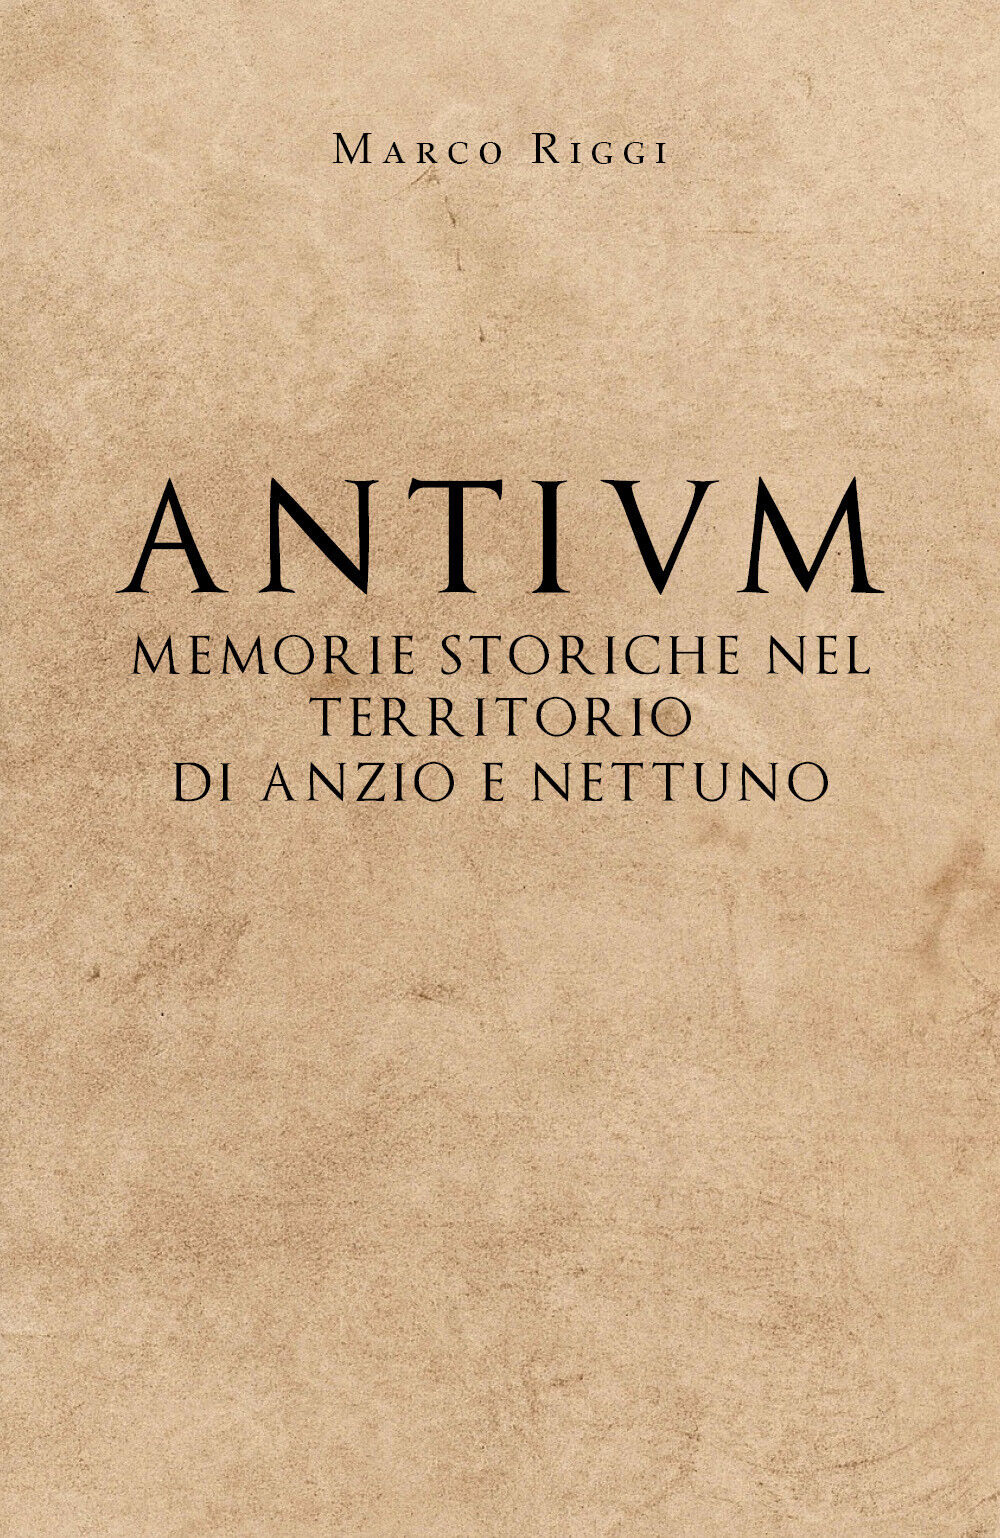 Antium: memorie storiche nel territorio di Anzio e Nettuno - Marco Riggi - P libro usato